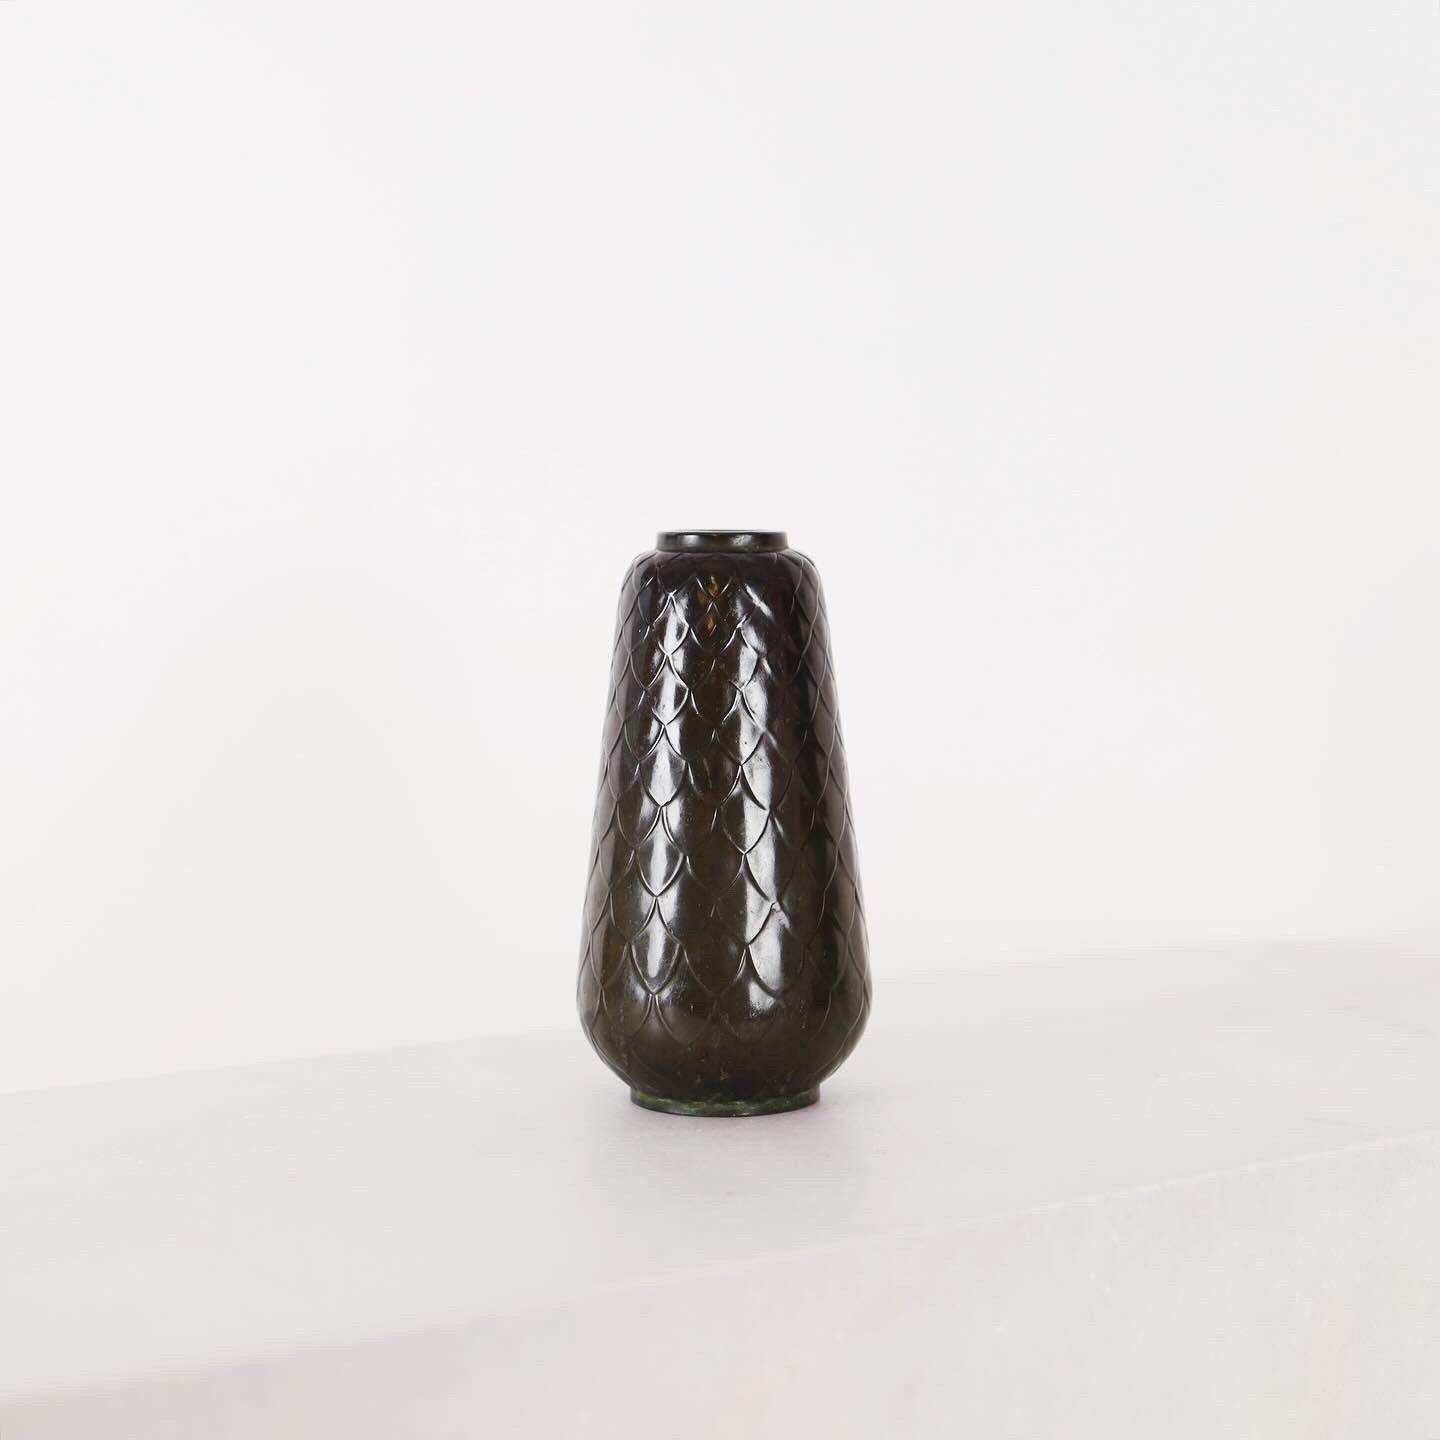 Un vase disco en métal avec un motif en peau de serpent, conçu par Ellen Schlanbush, qui fut avant l'heure directrice artistique de Just Andersen. 

* Un vase en métal avec un motif de peau de serpent 
* Designer : Ellen Schlanbusch
* Fabricant :